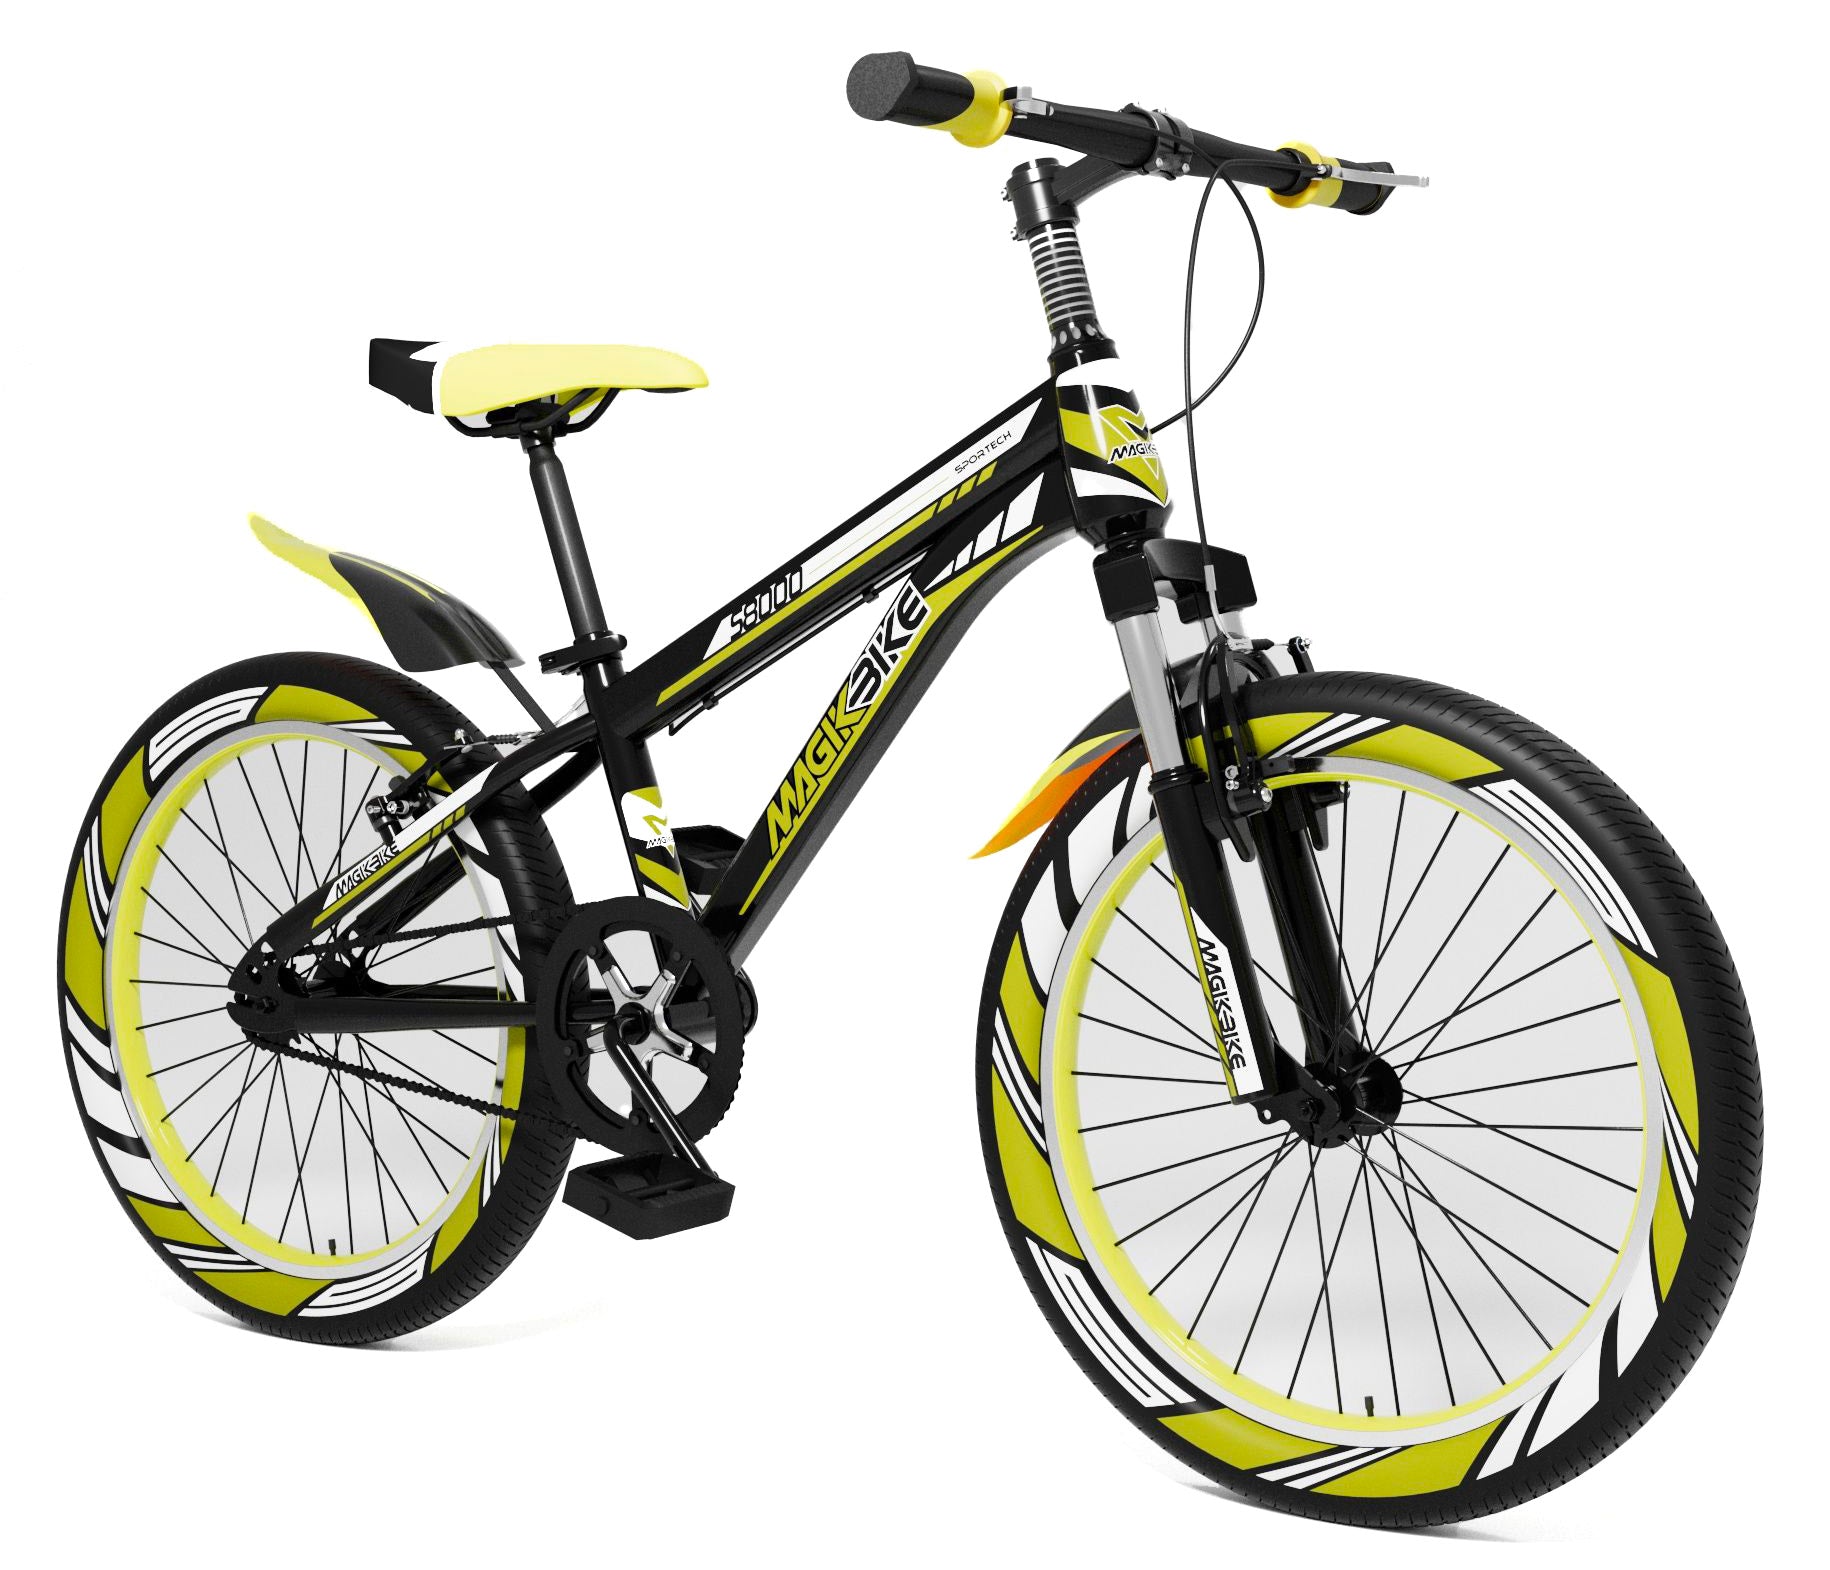 Bicicletta per Ragazzo 20” con Ammortizzatori Anteriori Magik-Bike Rancing  S8000 Gialla e Nera – acquista su Giordano Shop